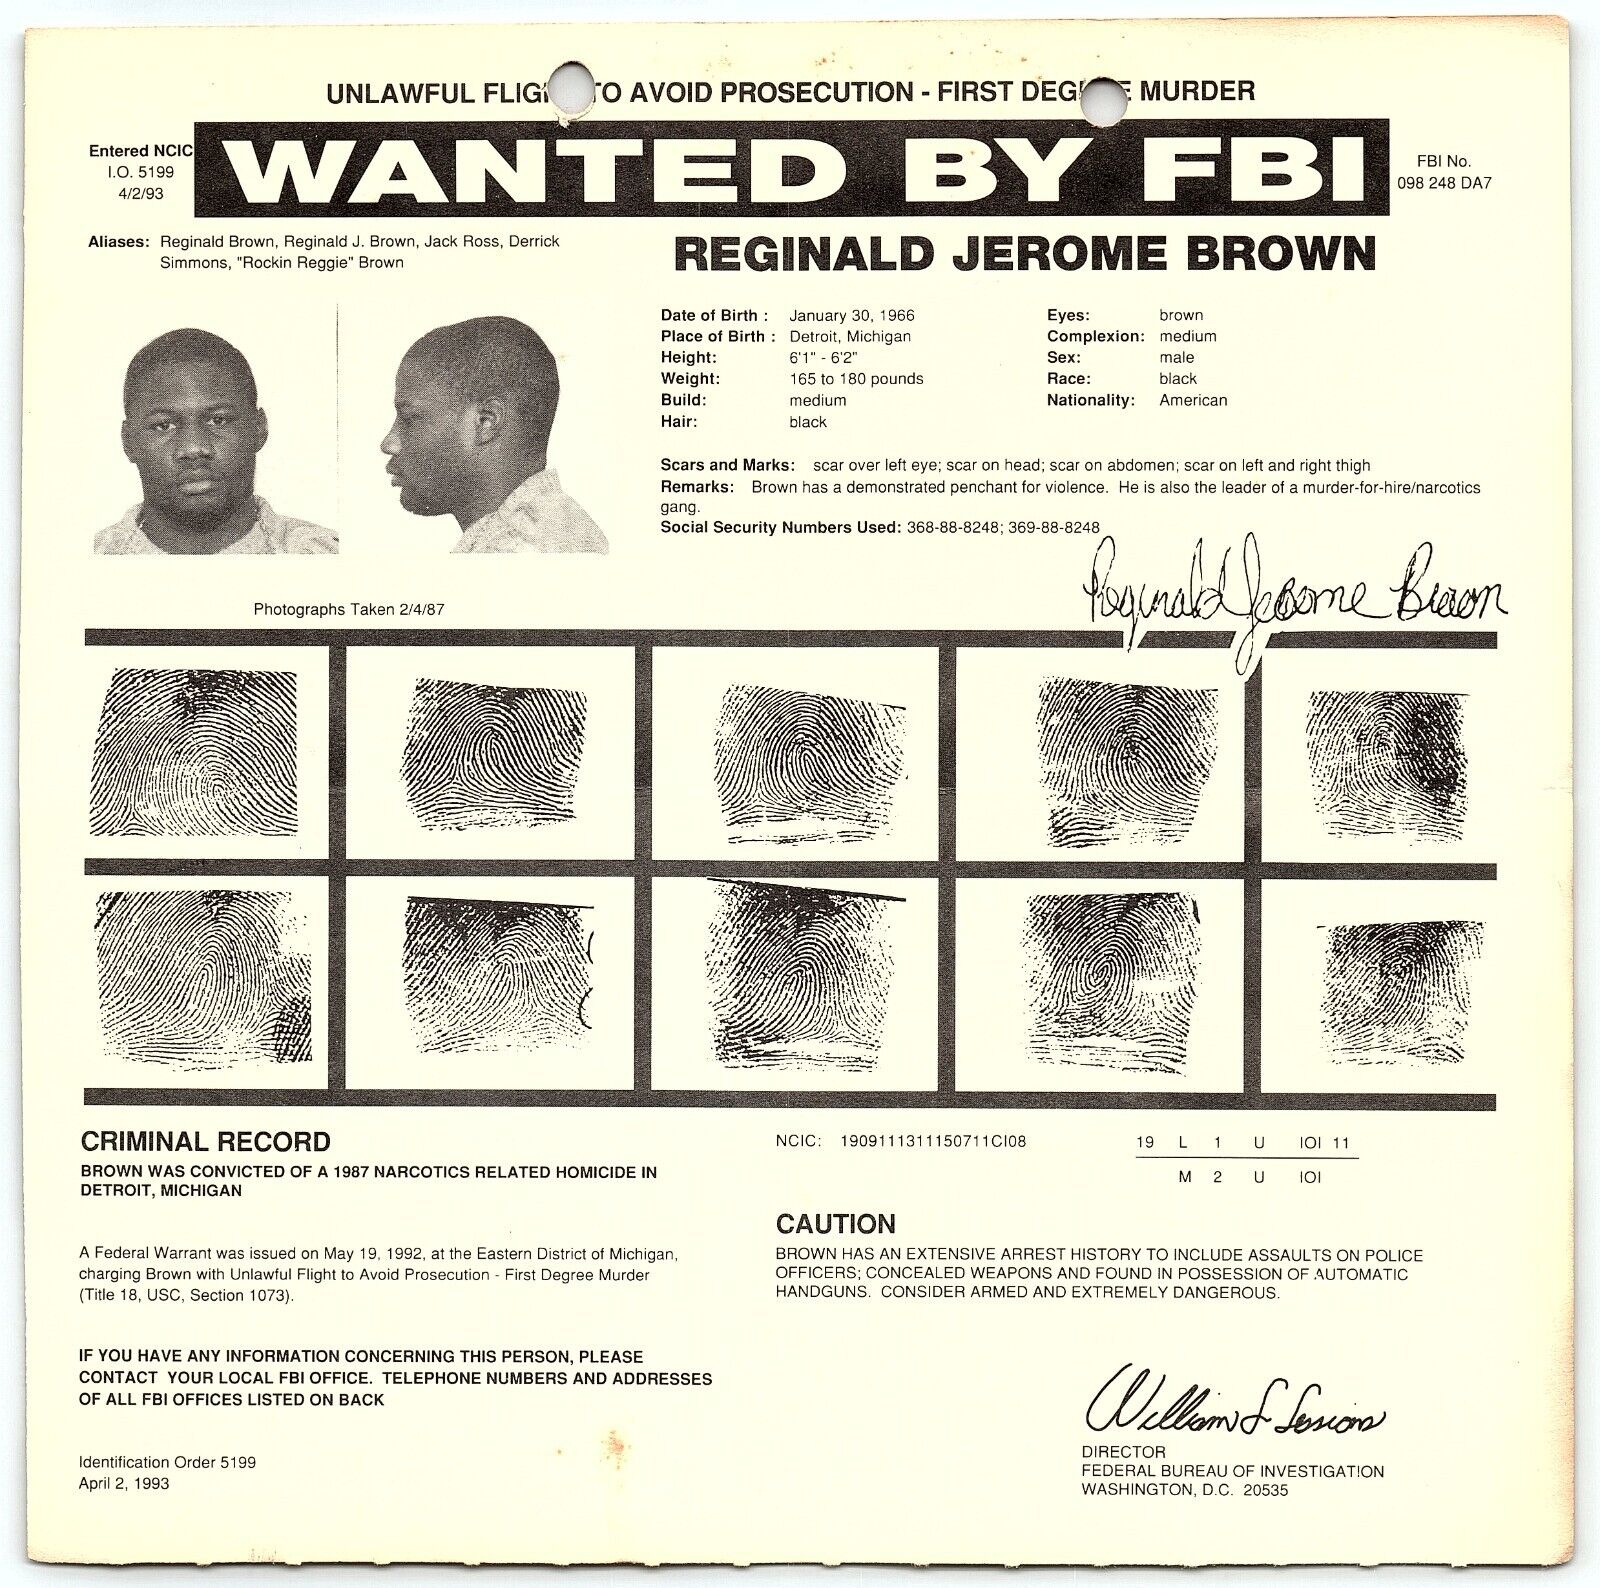 1993 FBI WANTED POSTER REGINALD JEROME BROWN LEADER MURDER-FOR-HIRE GANG Z4969